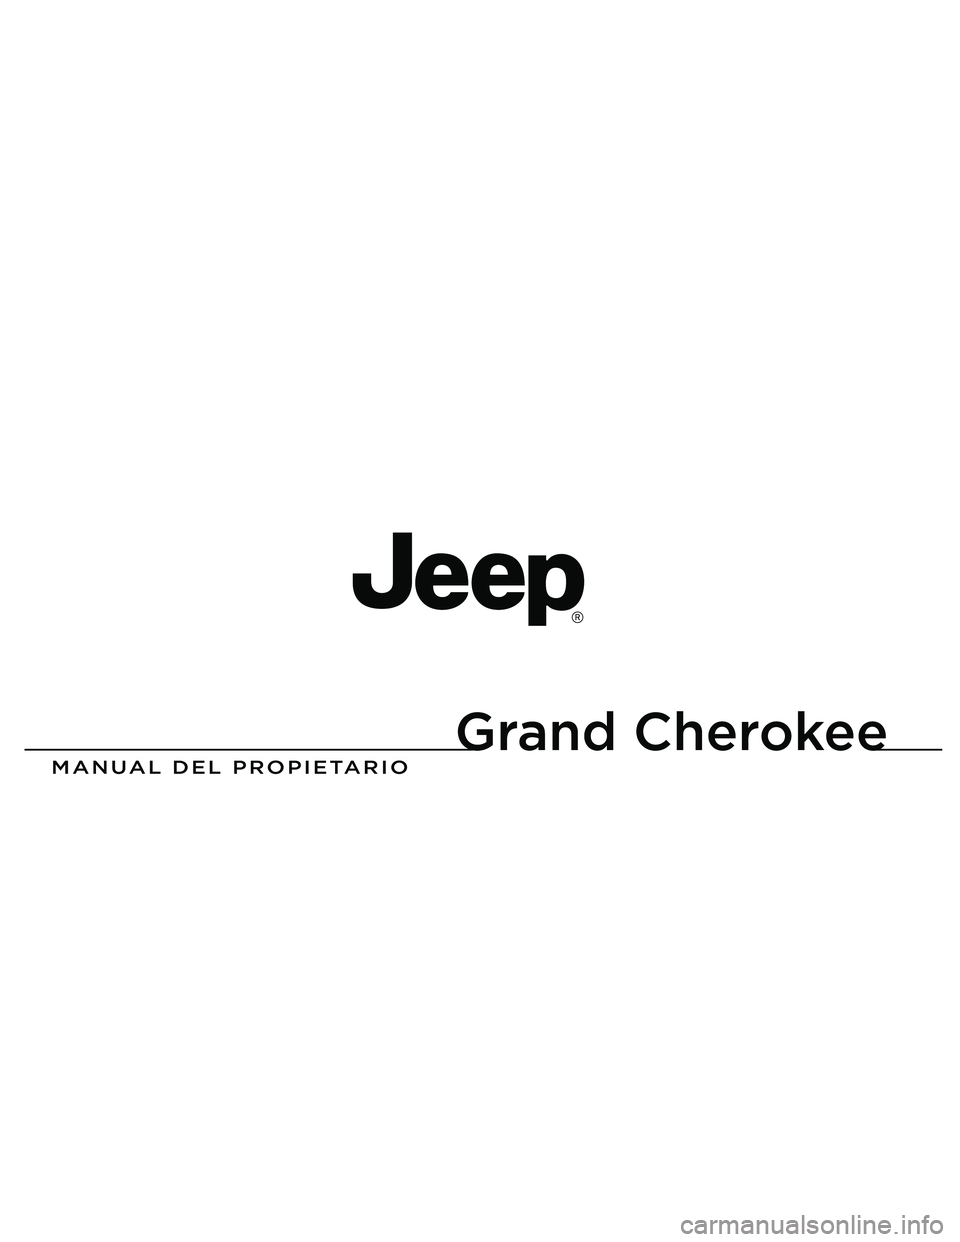 JEEP GRAND CHEROKEE 2011  Manual de Empleo y Cuidado (in Spanish) 
Grand Cherokee

MANUAL DEL PROPIETARIO
2013 Grand Cherokee
13WK741-126-PRI-AAImpreso en EE.UU. 13 